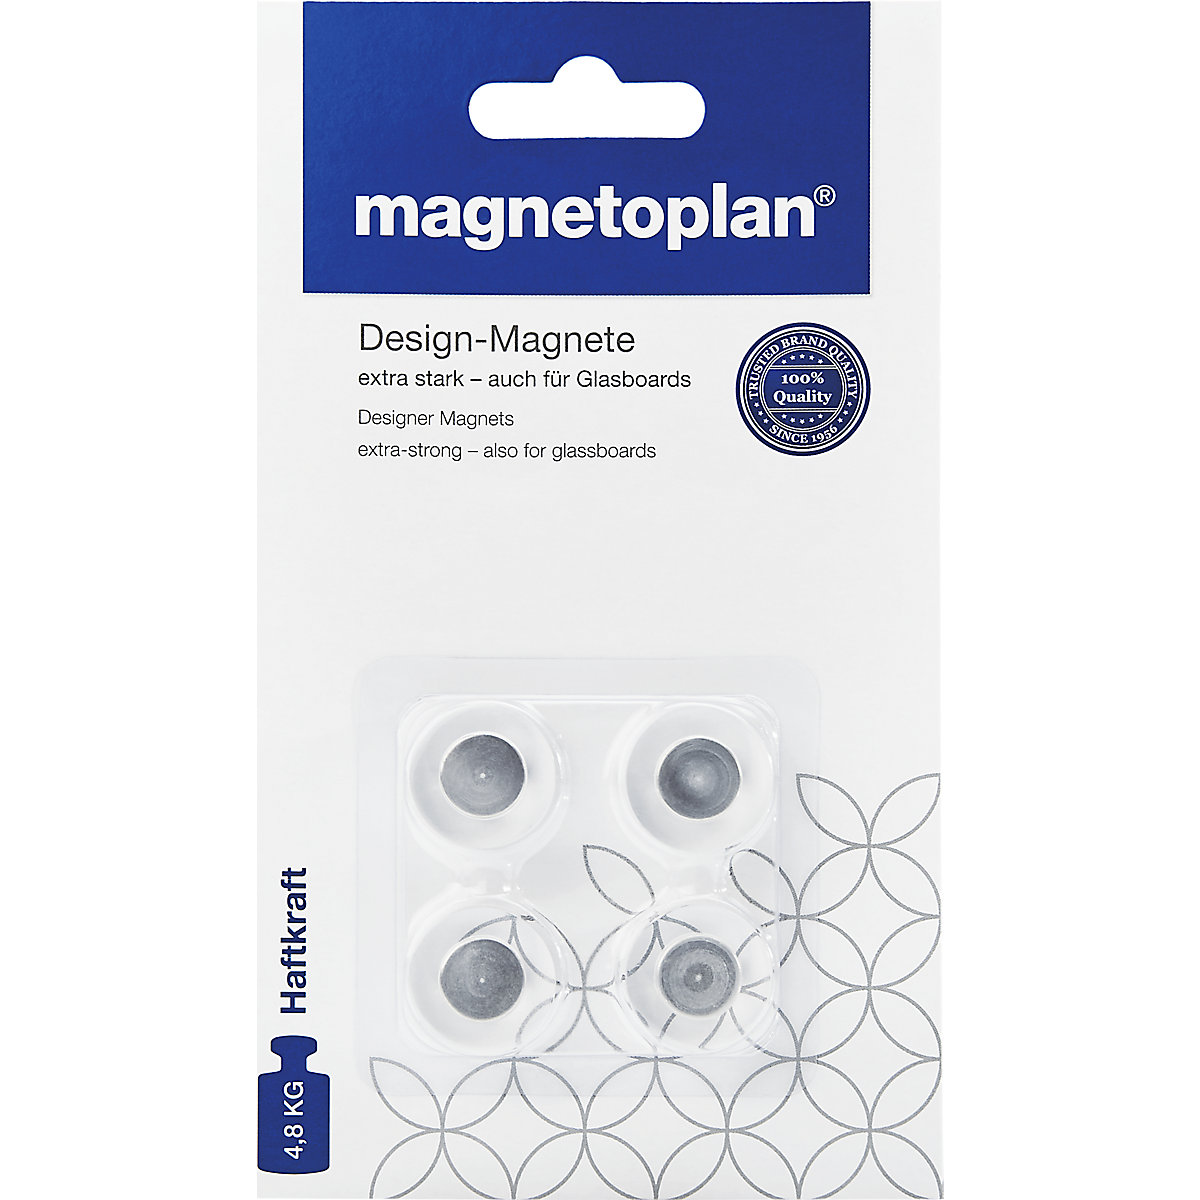 Designer magnet - magnetoplan